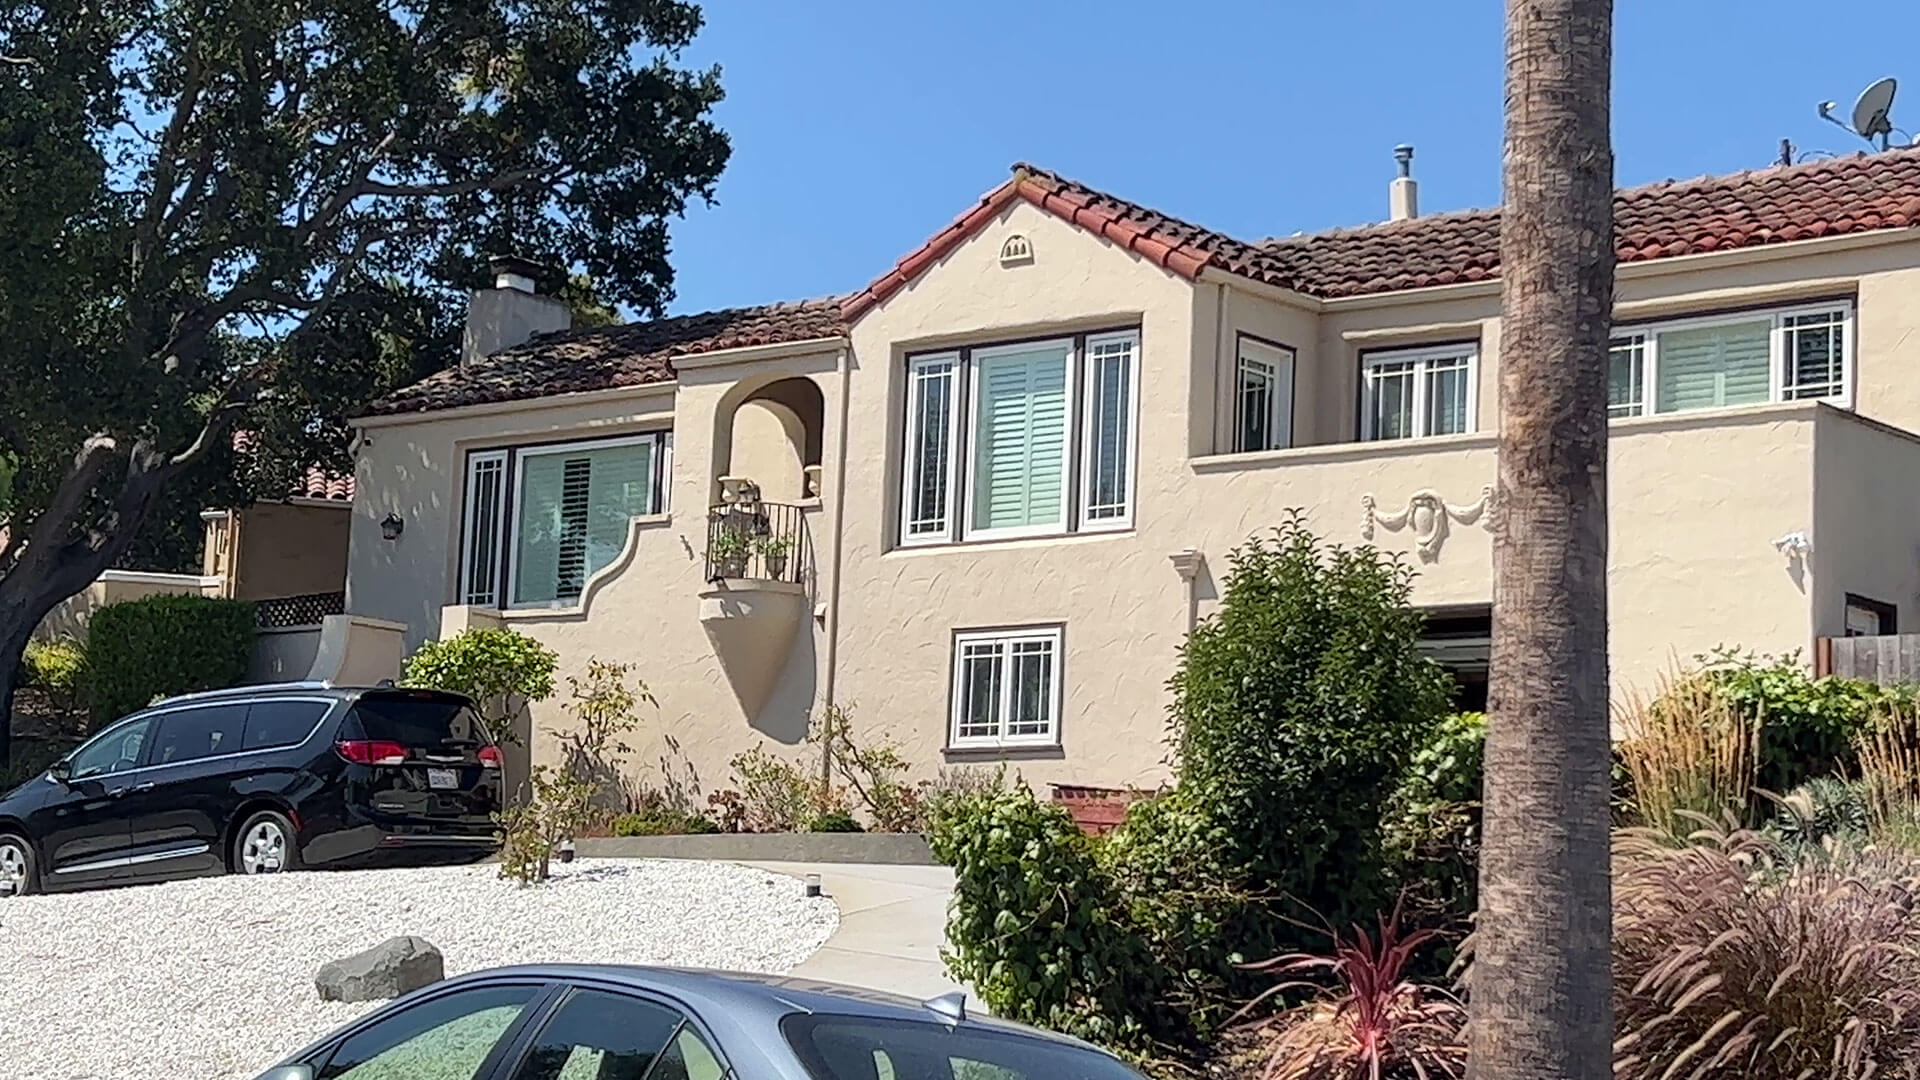 Houses at Cordes, San Carlos CA